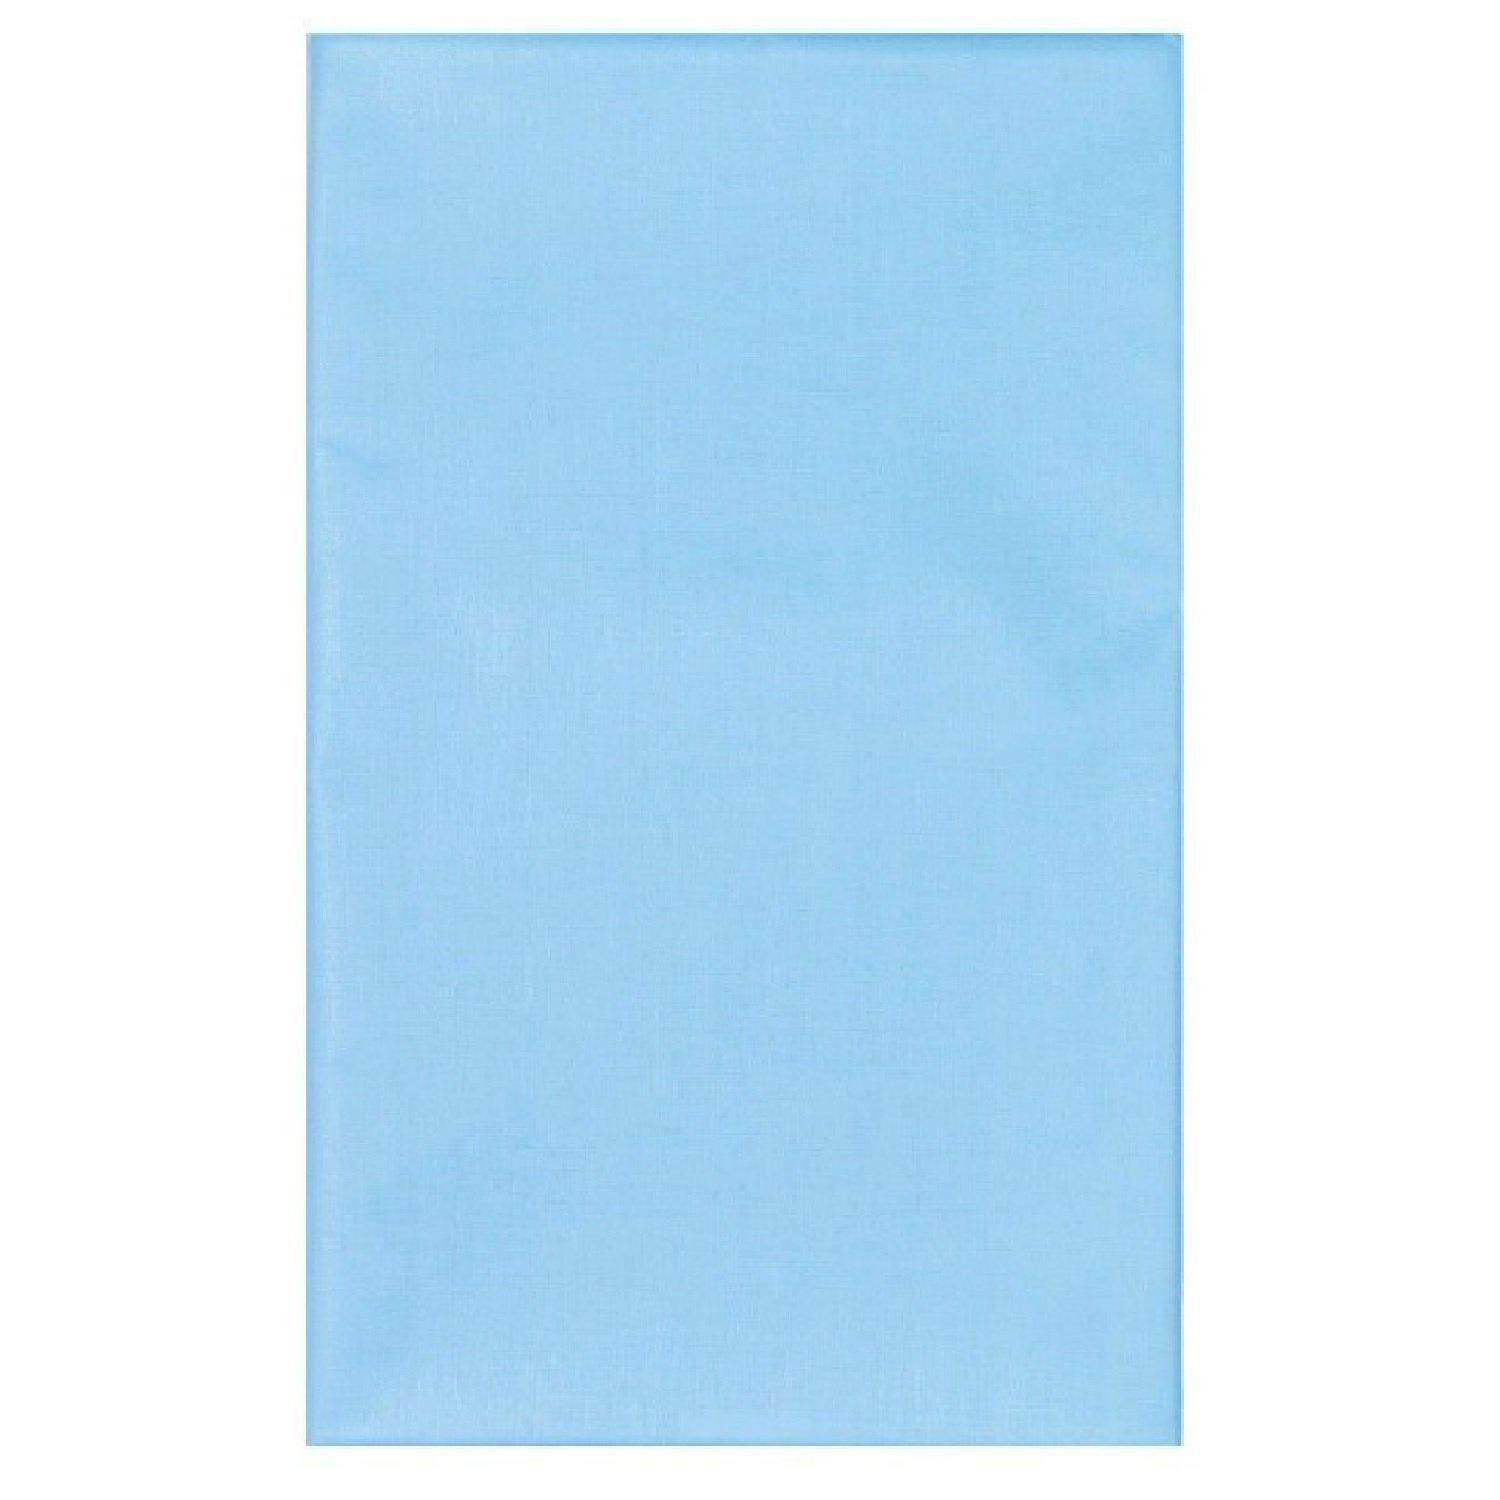 Клеенка подкладная с ПВХ покрытием без окантовки голубая 1 х 1,4 м, Колорит, 150 гр., пакет